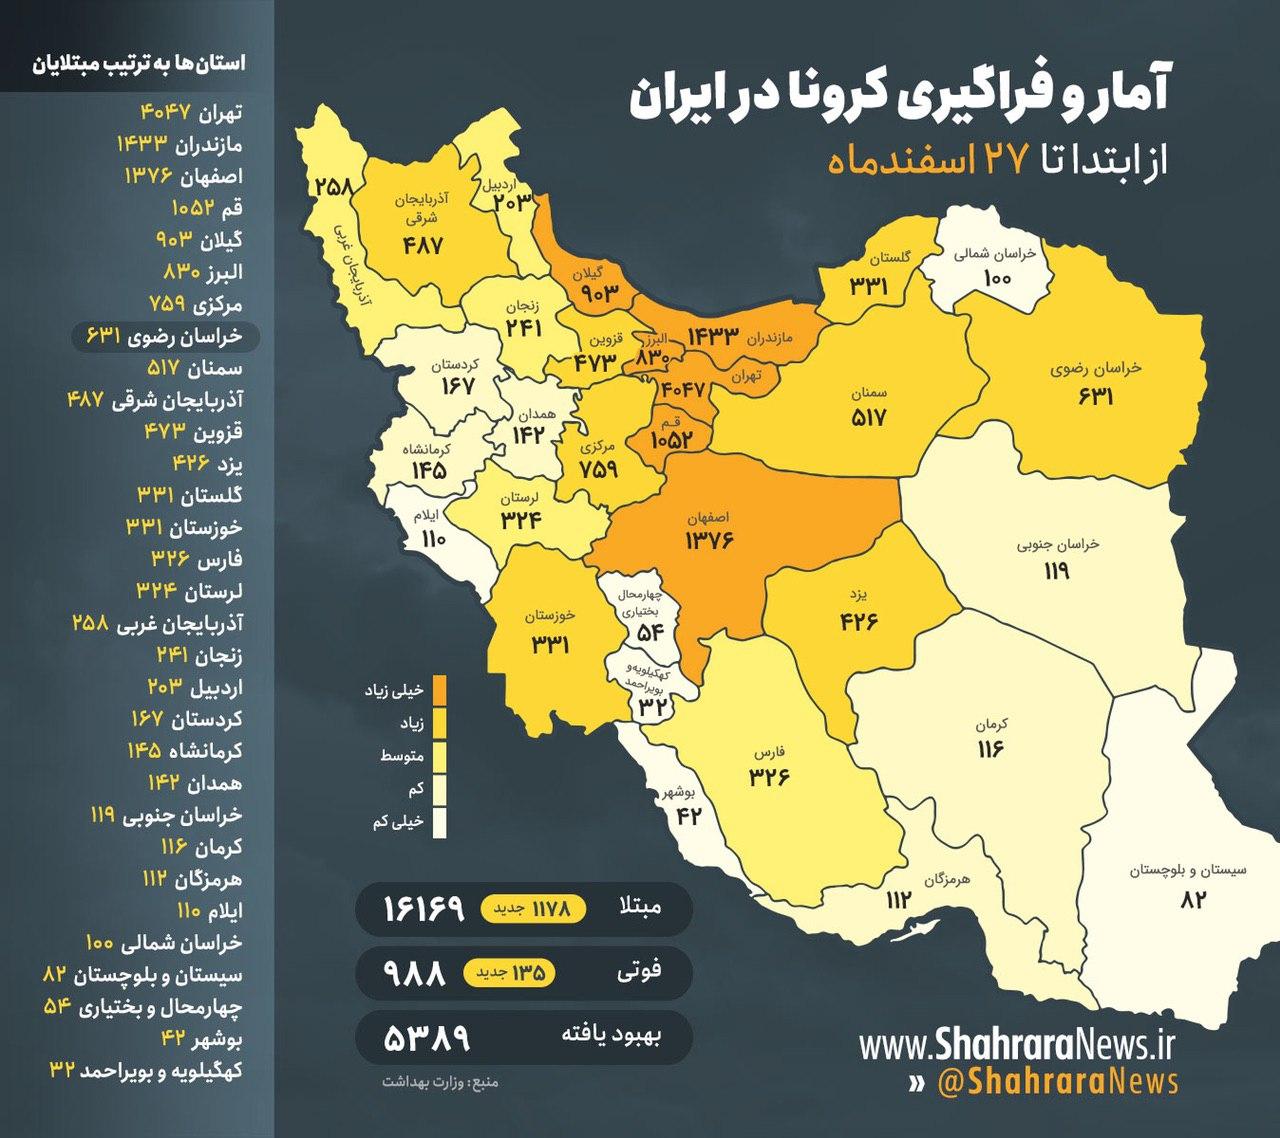 اینفوگرافی / آمار و فراگیری کرونا در ایران تا ۲۷اسفند